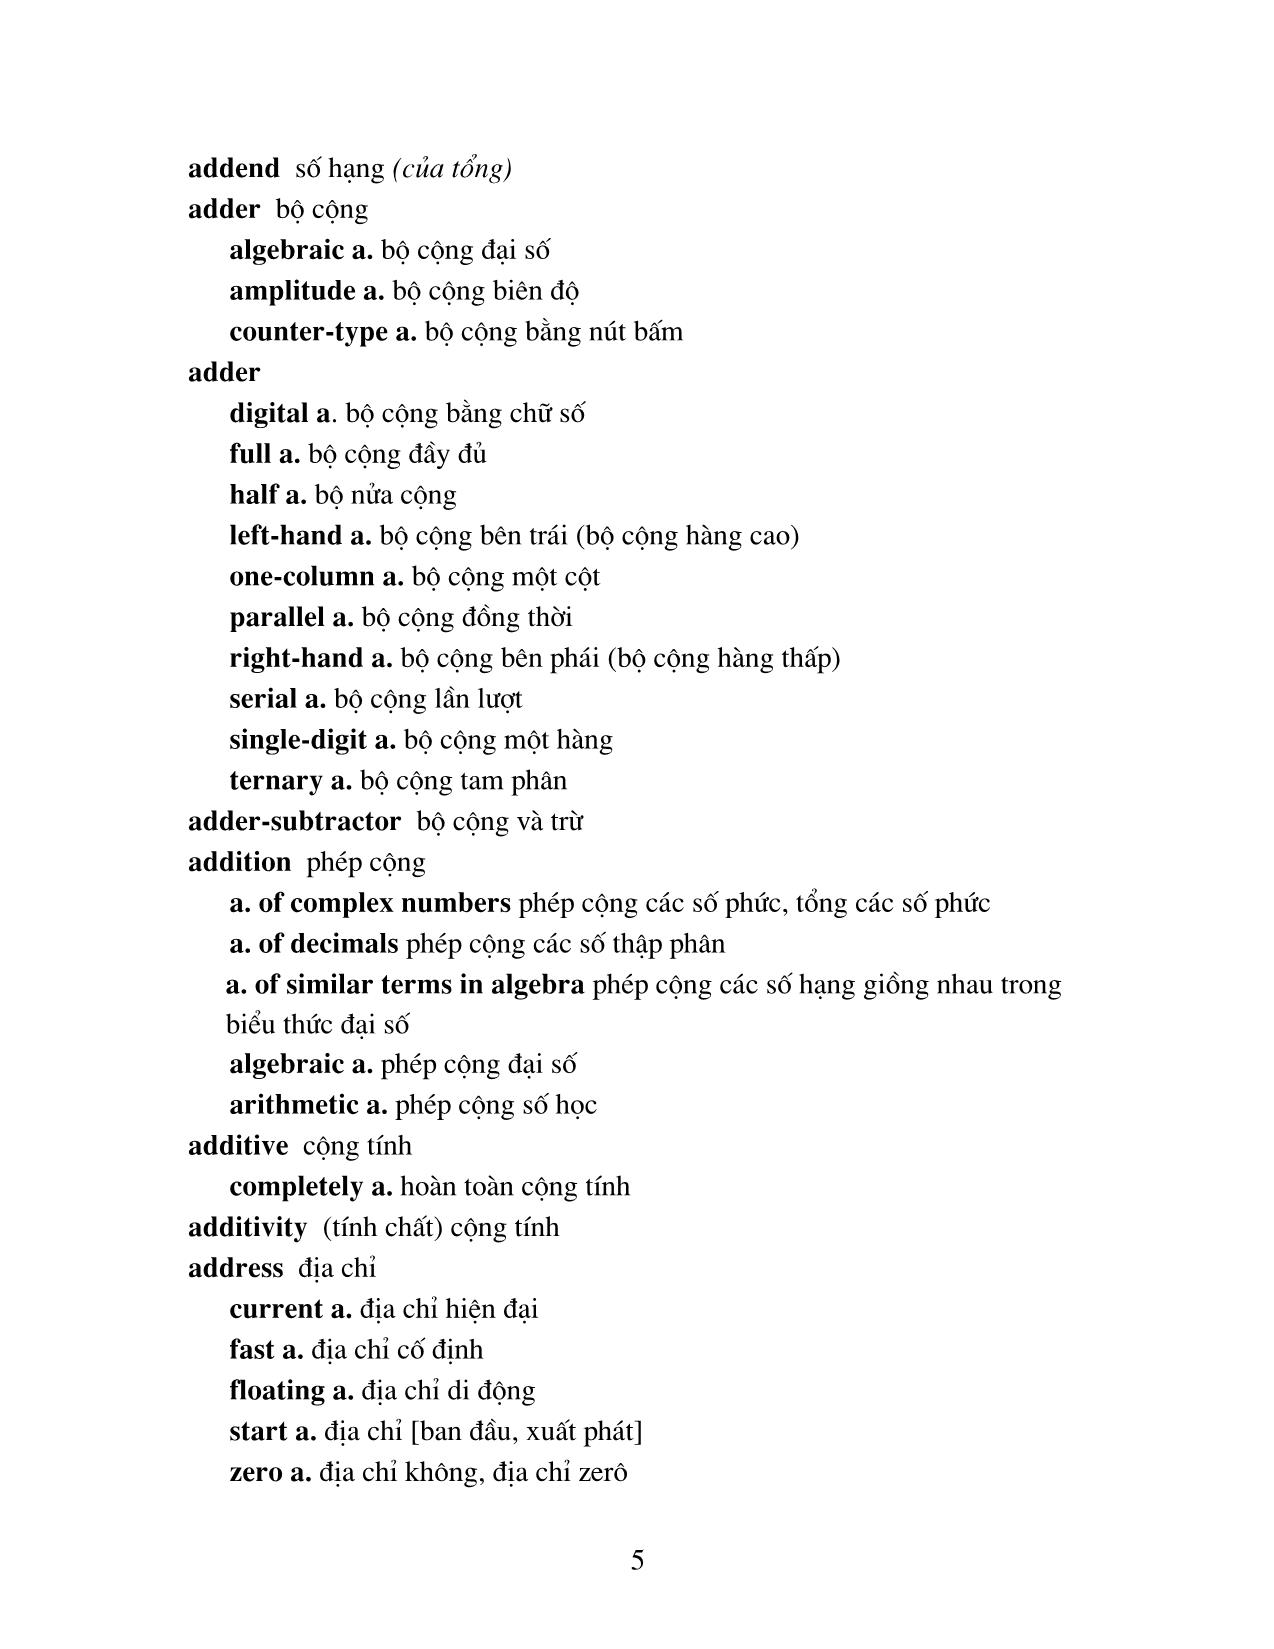 Từ điển Toán học Anh - Việt trang 5